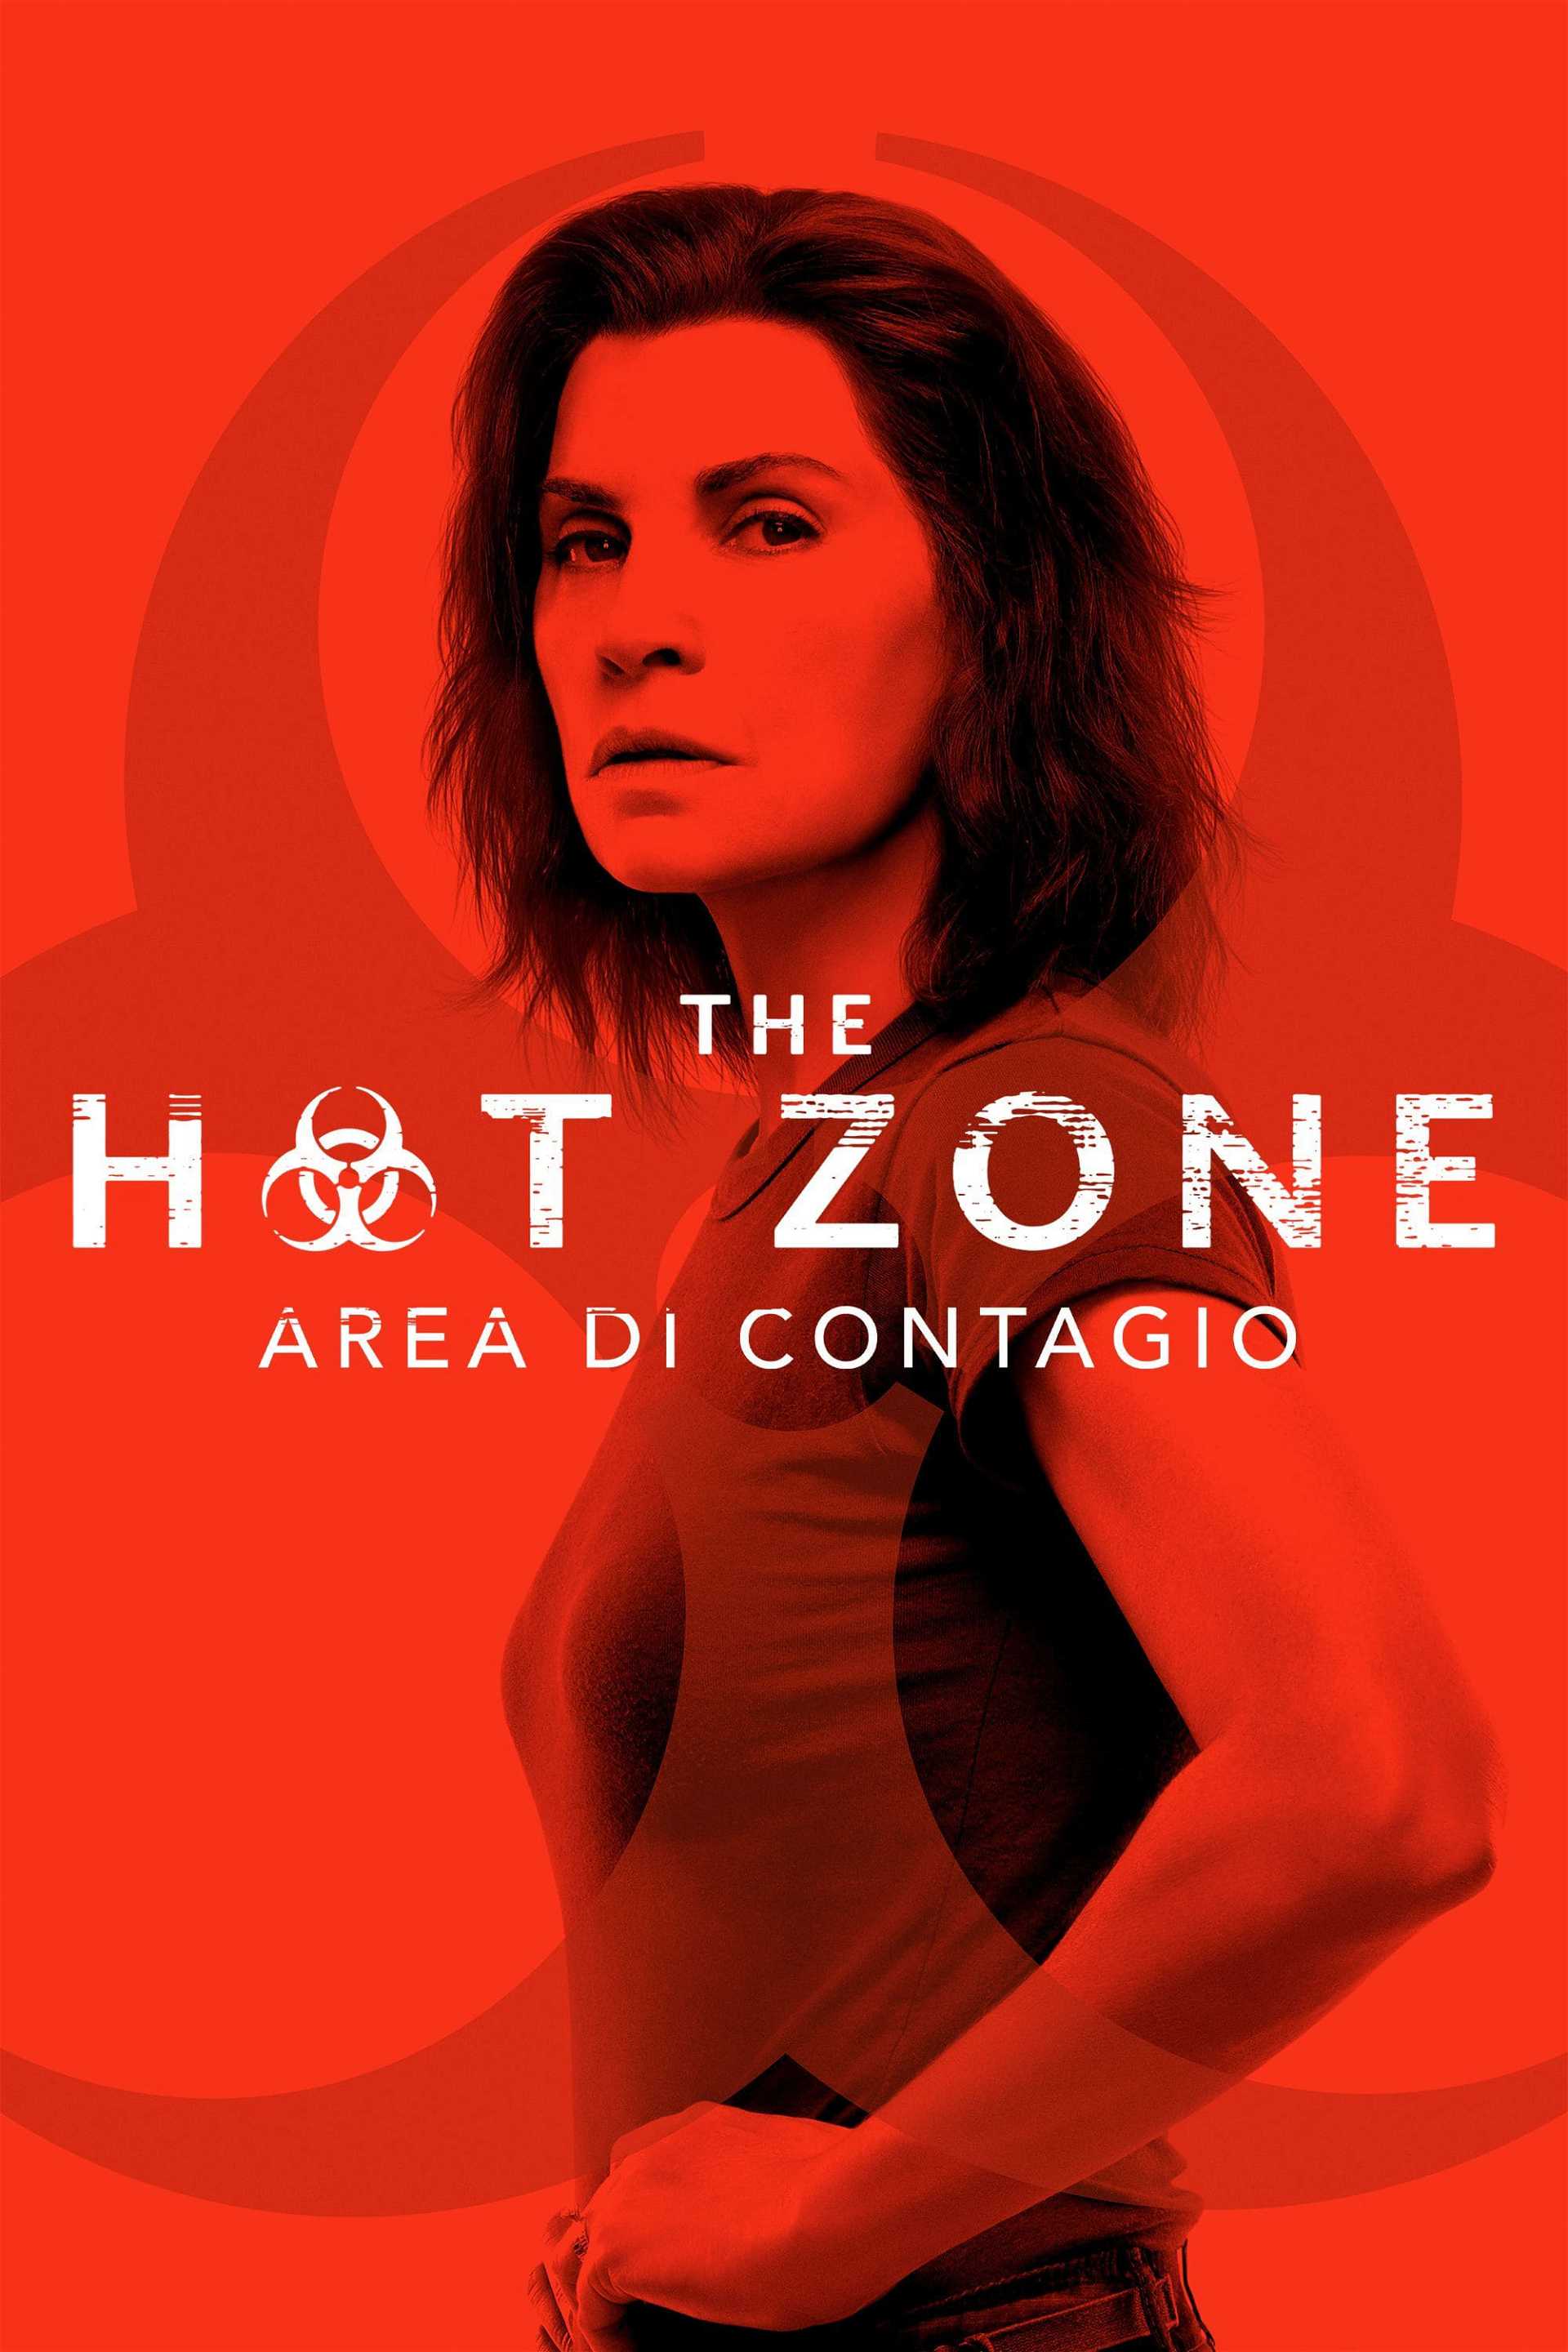 The Hot Zone - Area di contagio in streaming